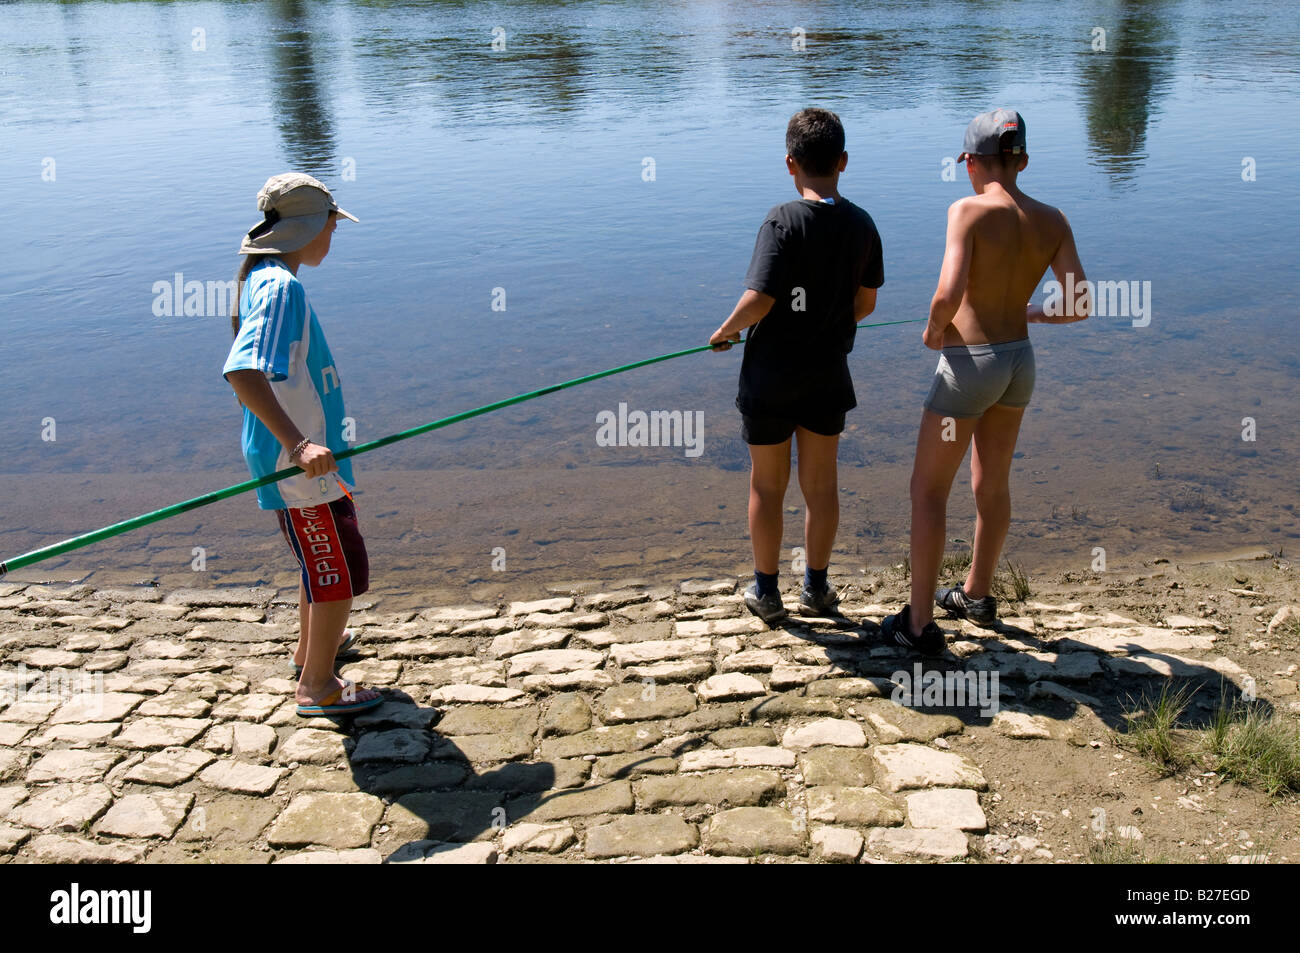 Los jóvenes la pesca en banco del río Vienne, Nouâtre, Indre-et-Loire, Francia. Foto de stock